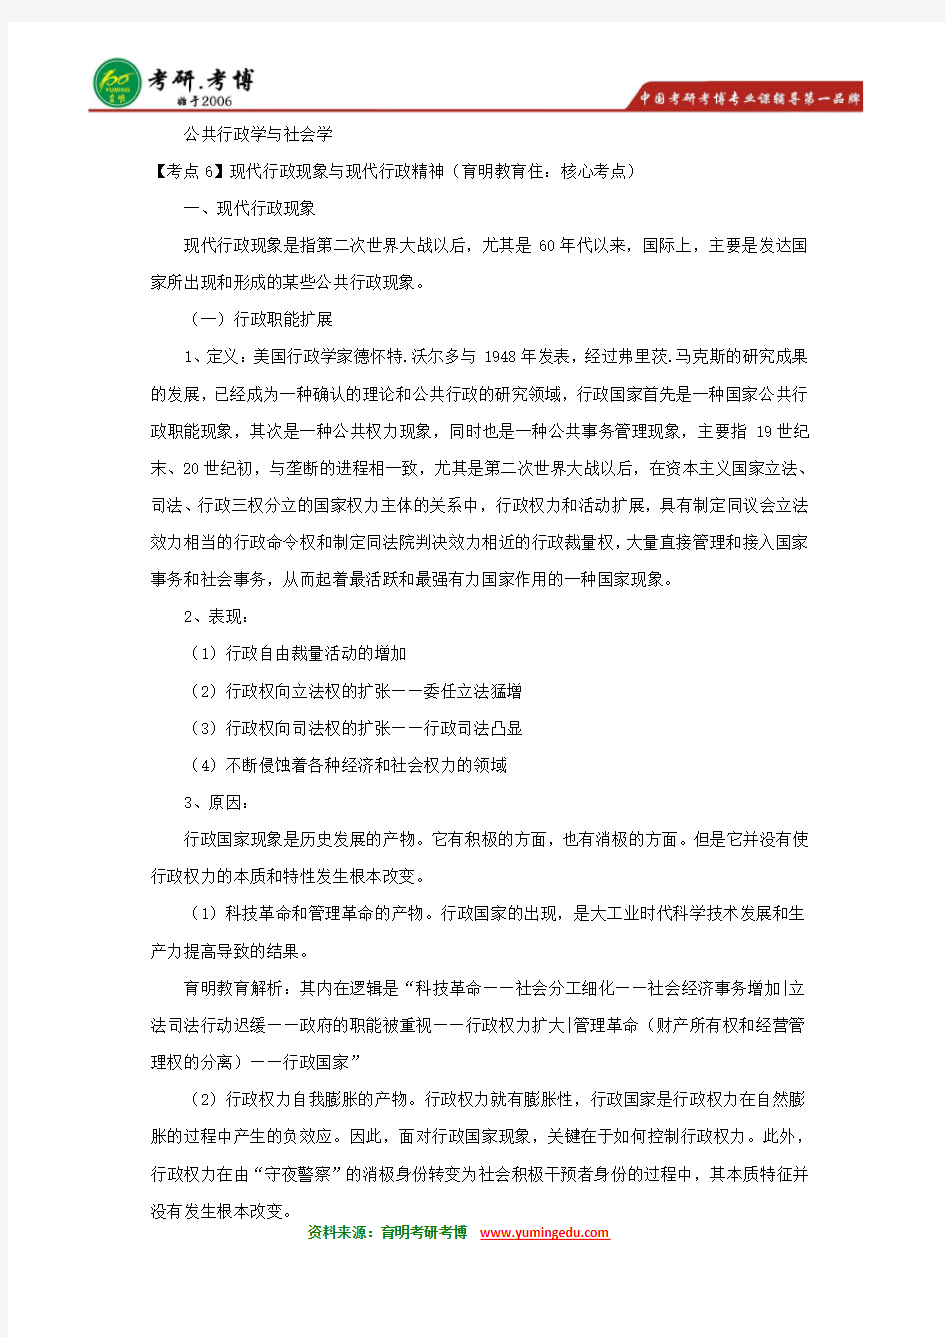 2017年北京大学行政管理专业参考书、报考要求、报录比、招生人数、就业情况